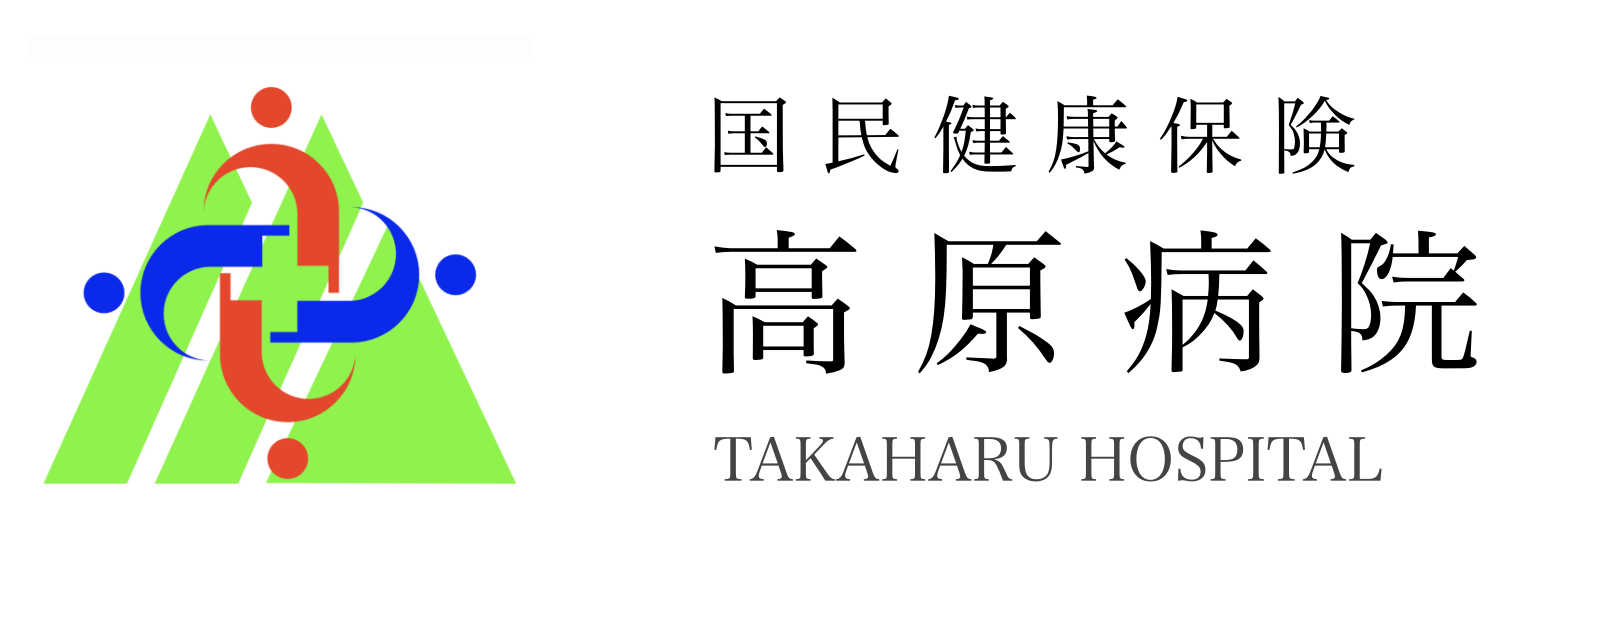 TAKAHARU HOSPITAL